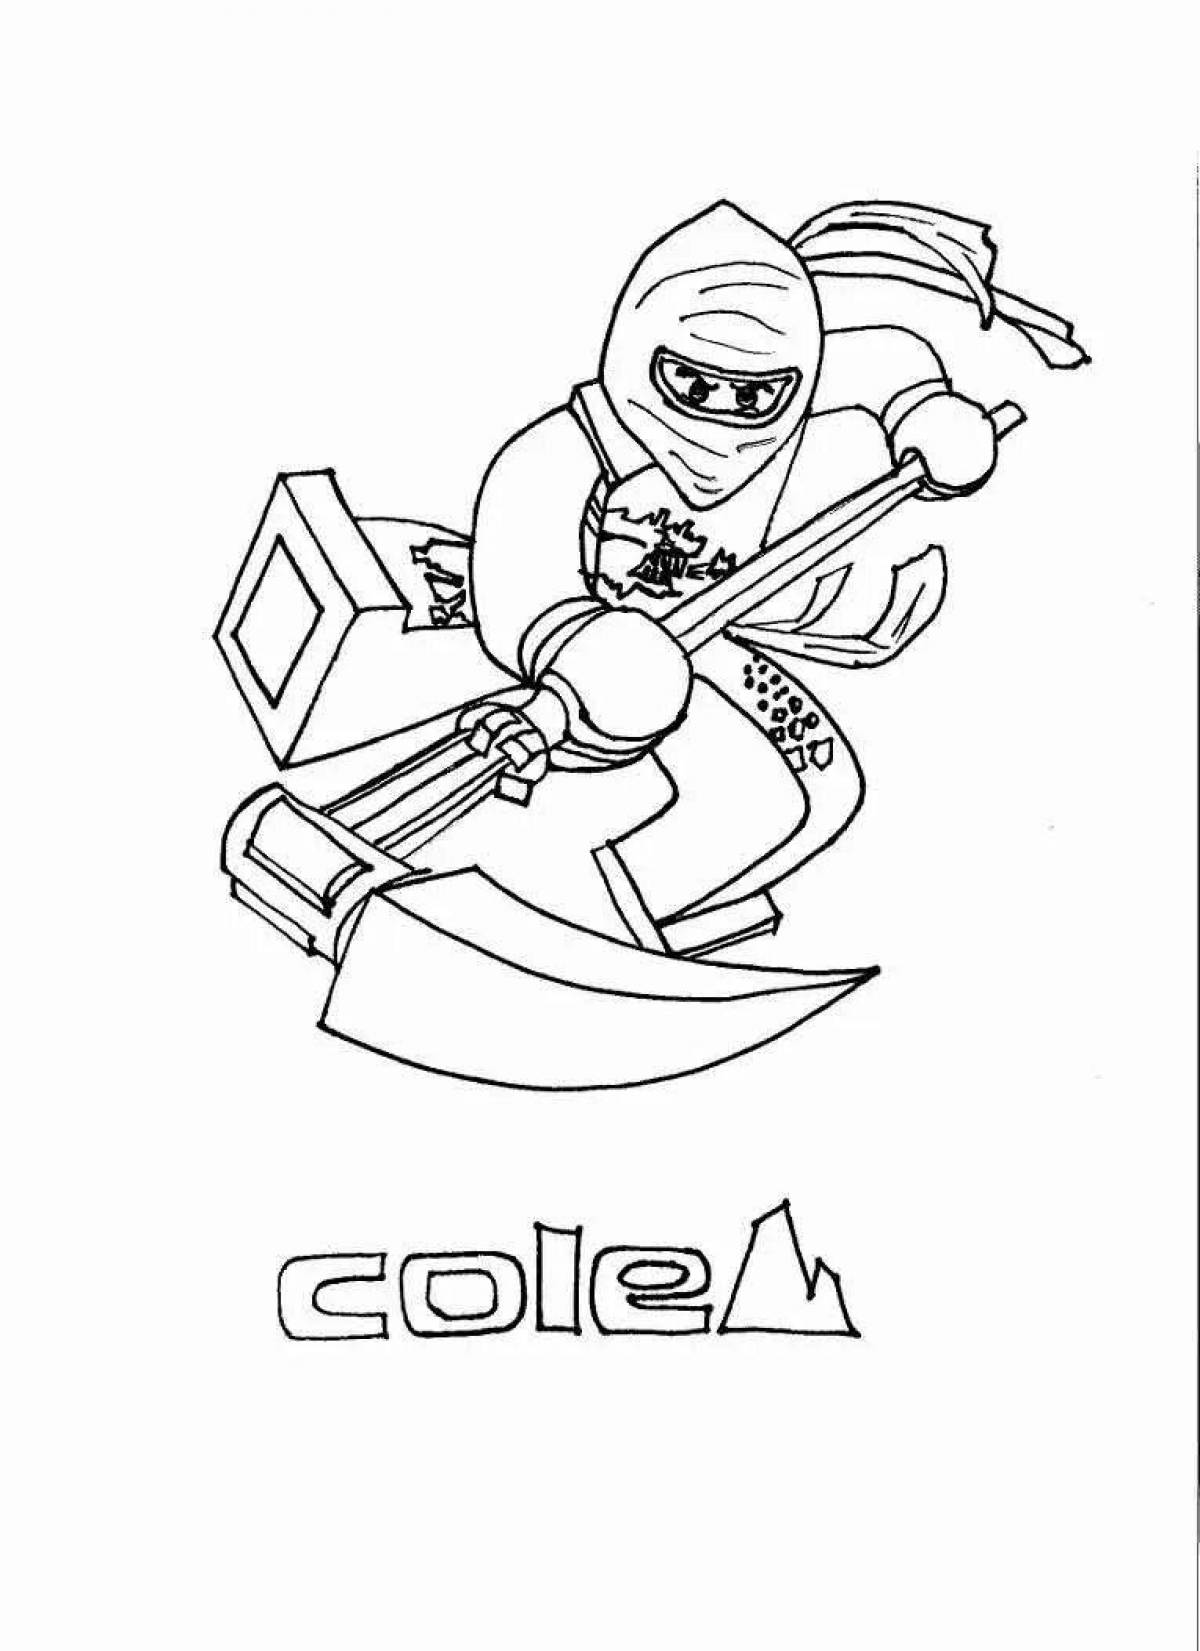 Cole's nice ninjago coloring page